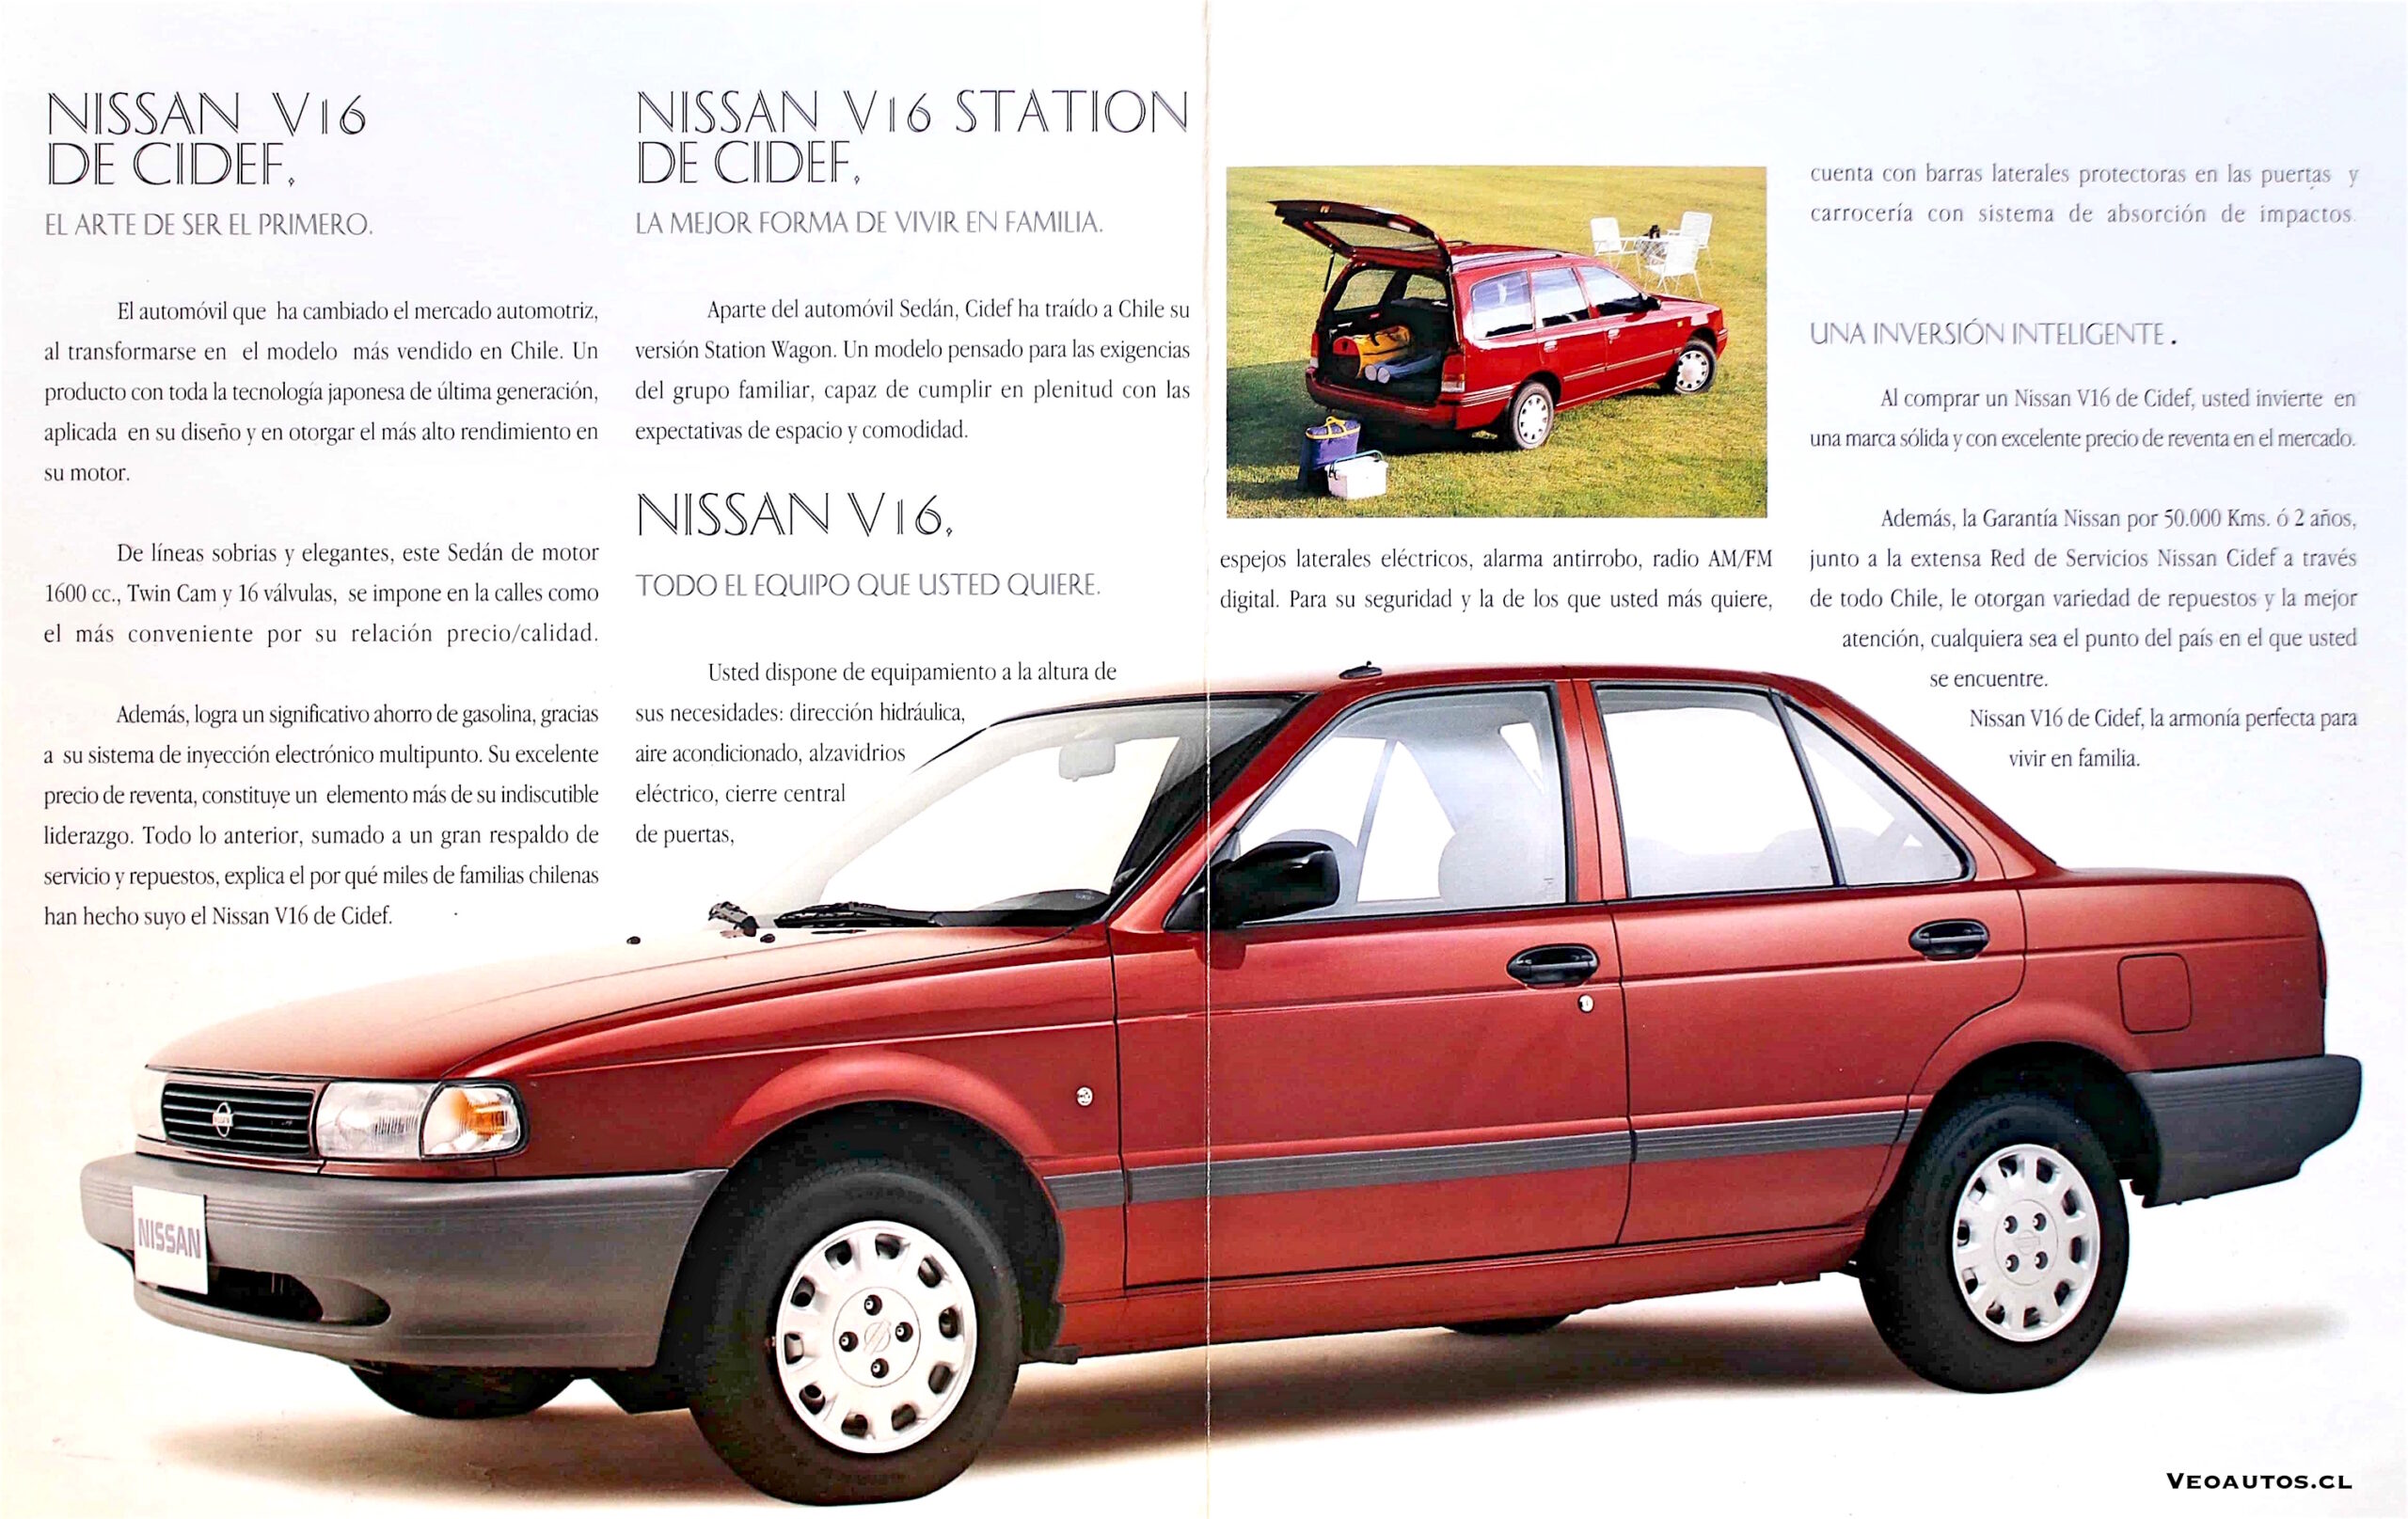 Nissan V16 año 96 con tapa roja: Un clásico de calidad y estilo